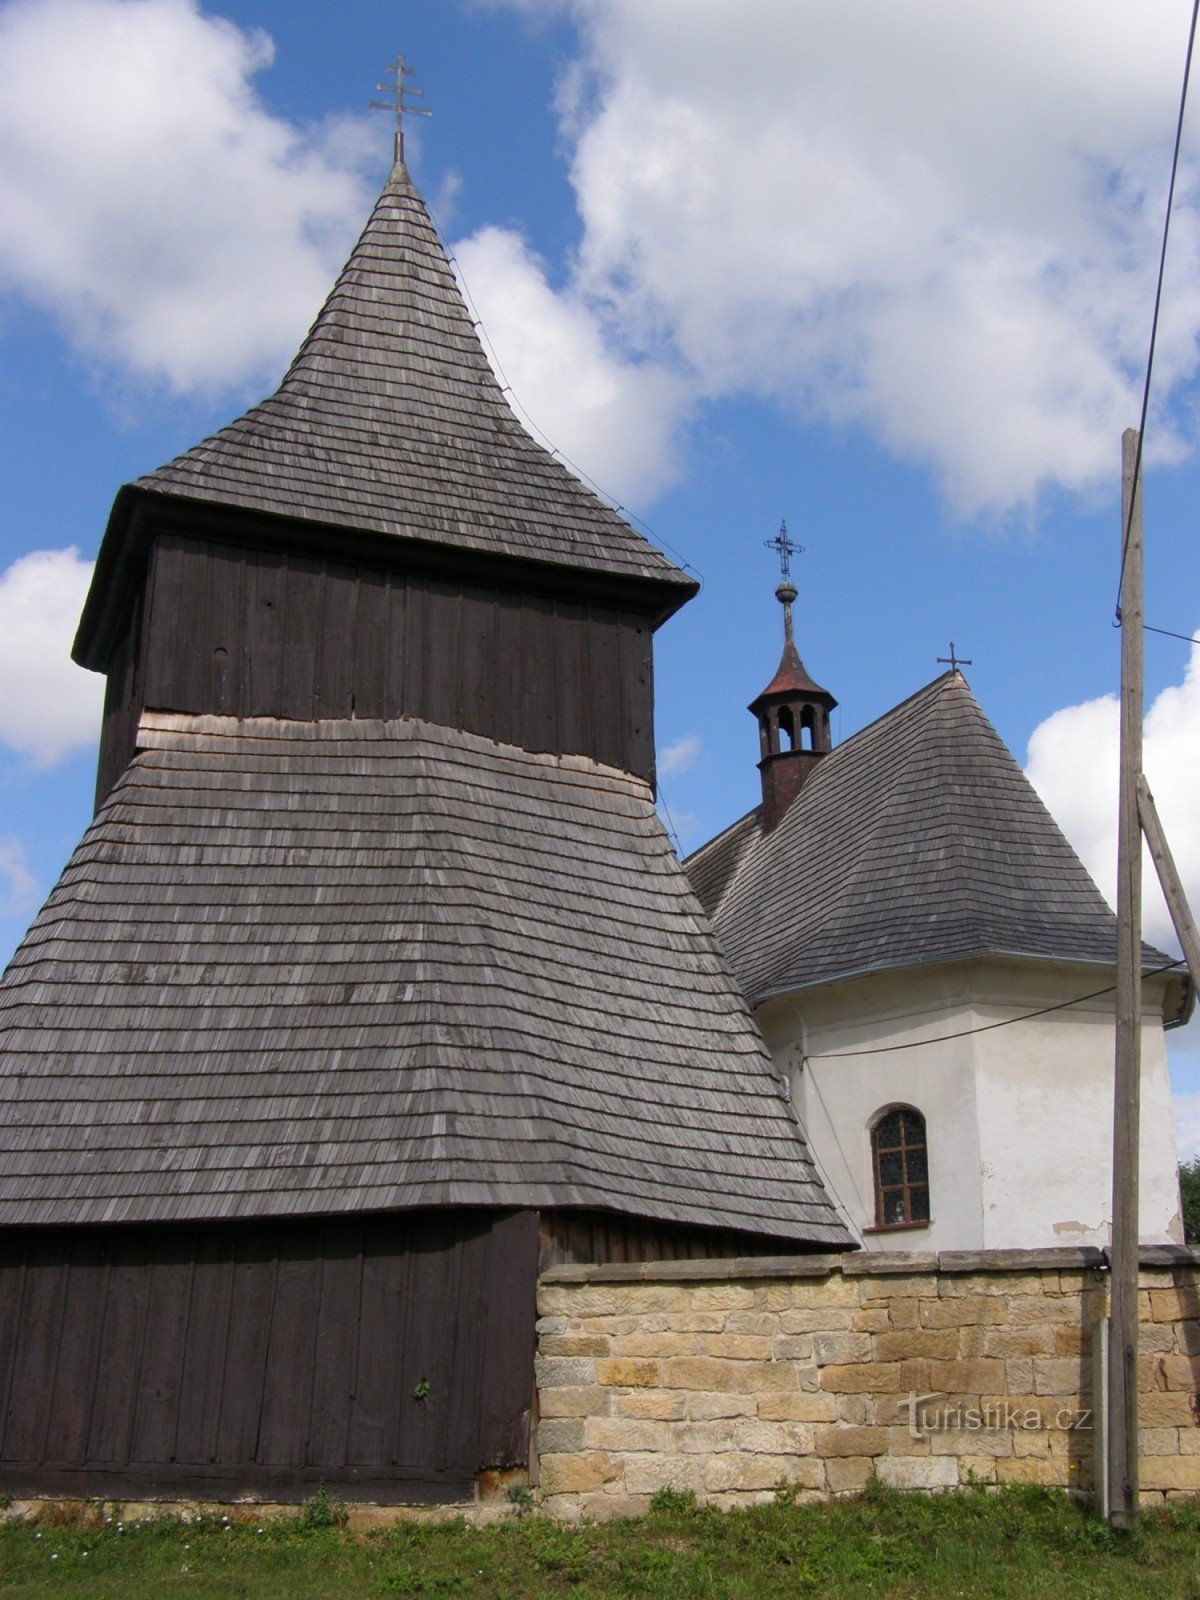 Височани - дерев'яна церква св. Ринки з дерев'яною дзвіницею